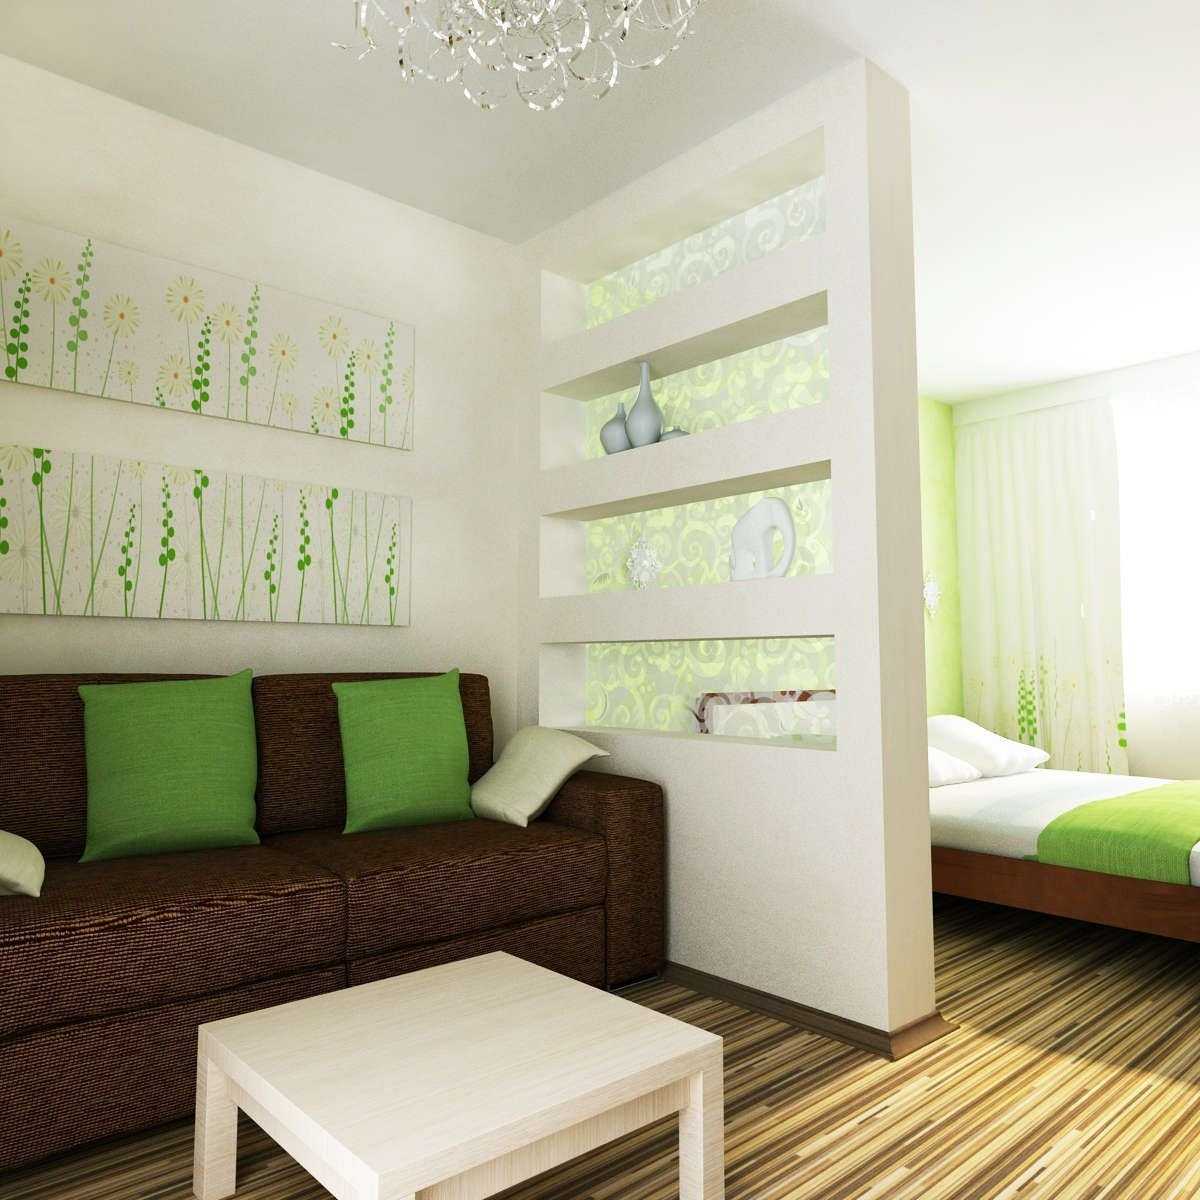 Варианты зонирования комнаты на гостиную и спальную с фото реальных квартир, в том числе маленьких 18 квм